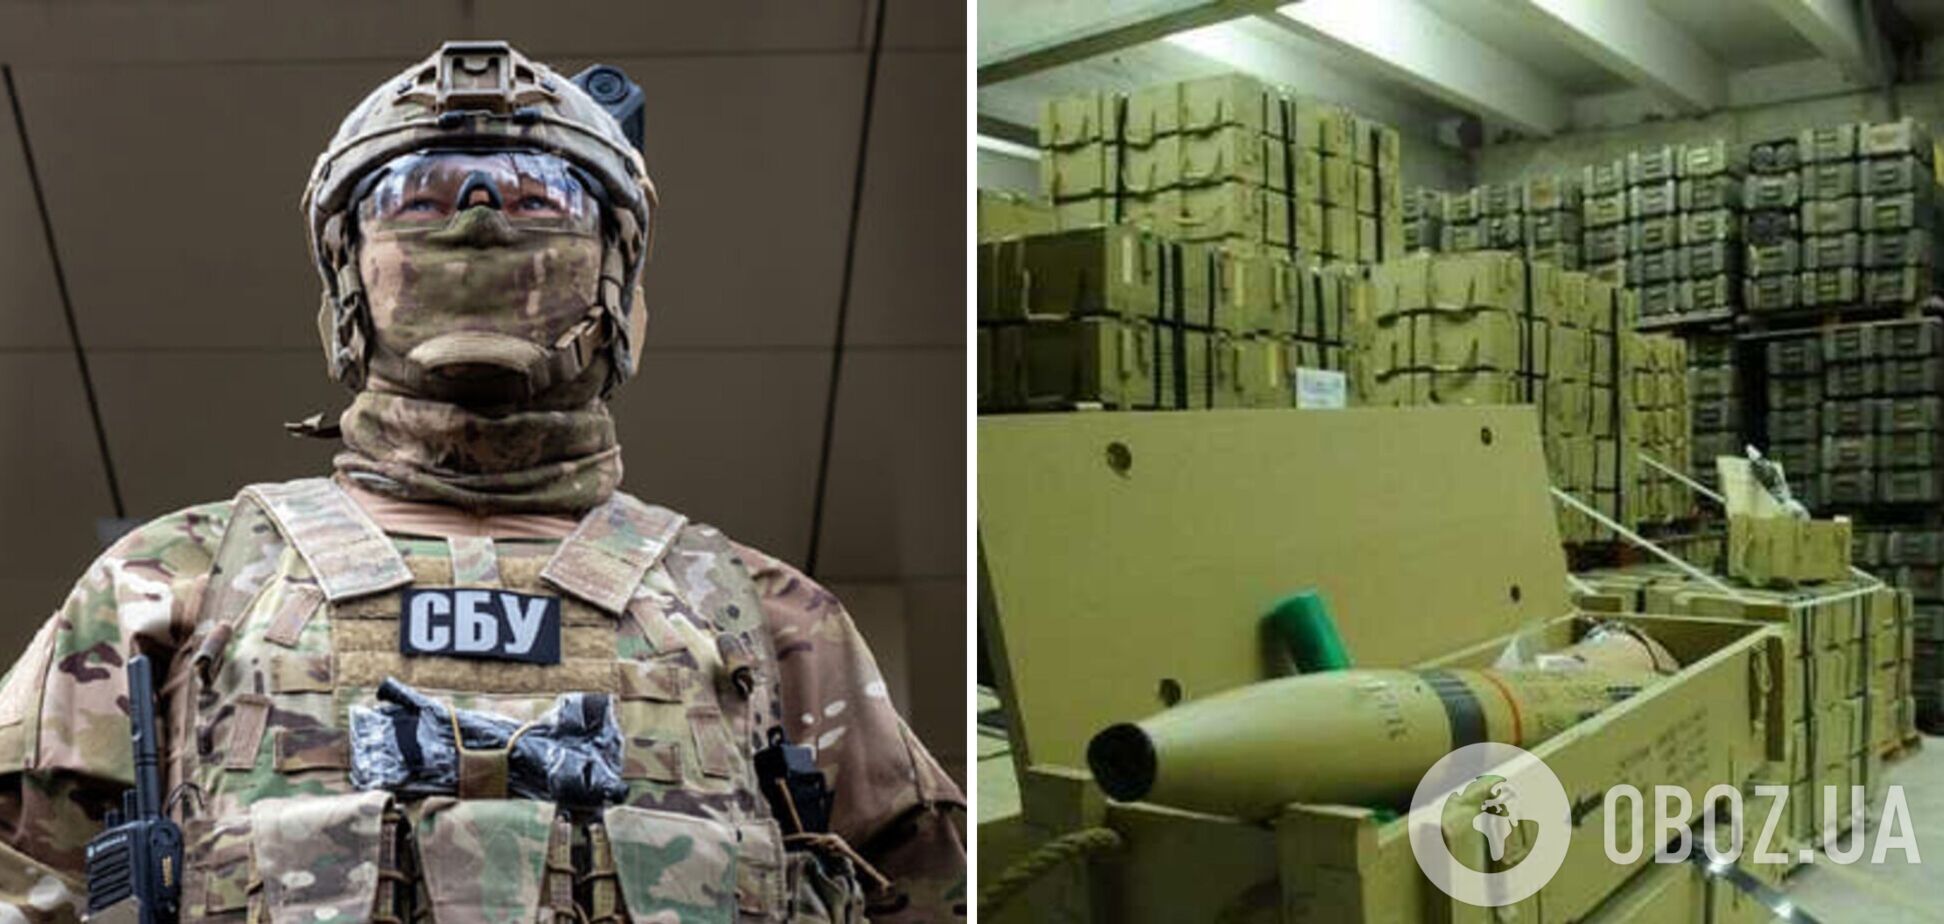 СБУ обнаружила на Харьковщине законспирированный склад с боеприпасами и комплектующими на $200 млн. Видео